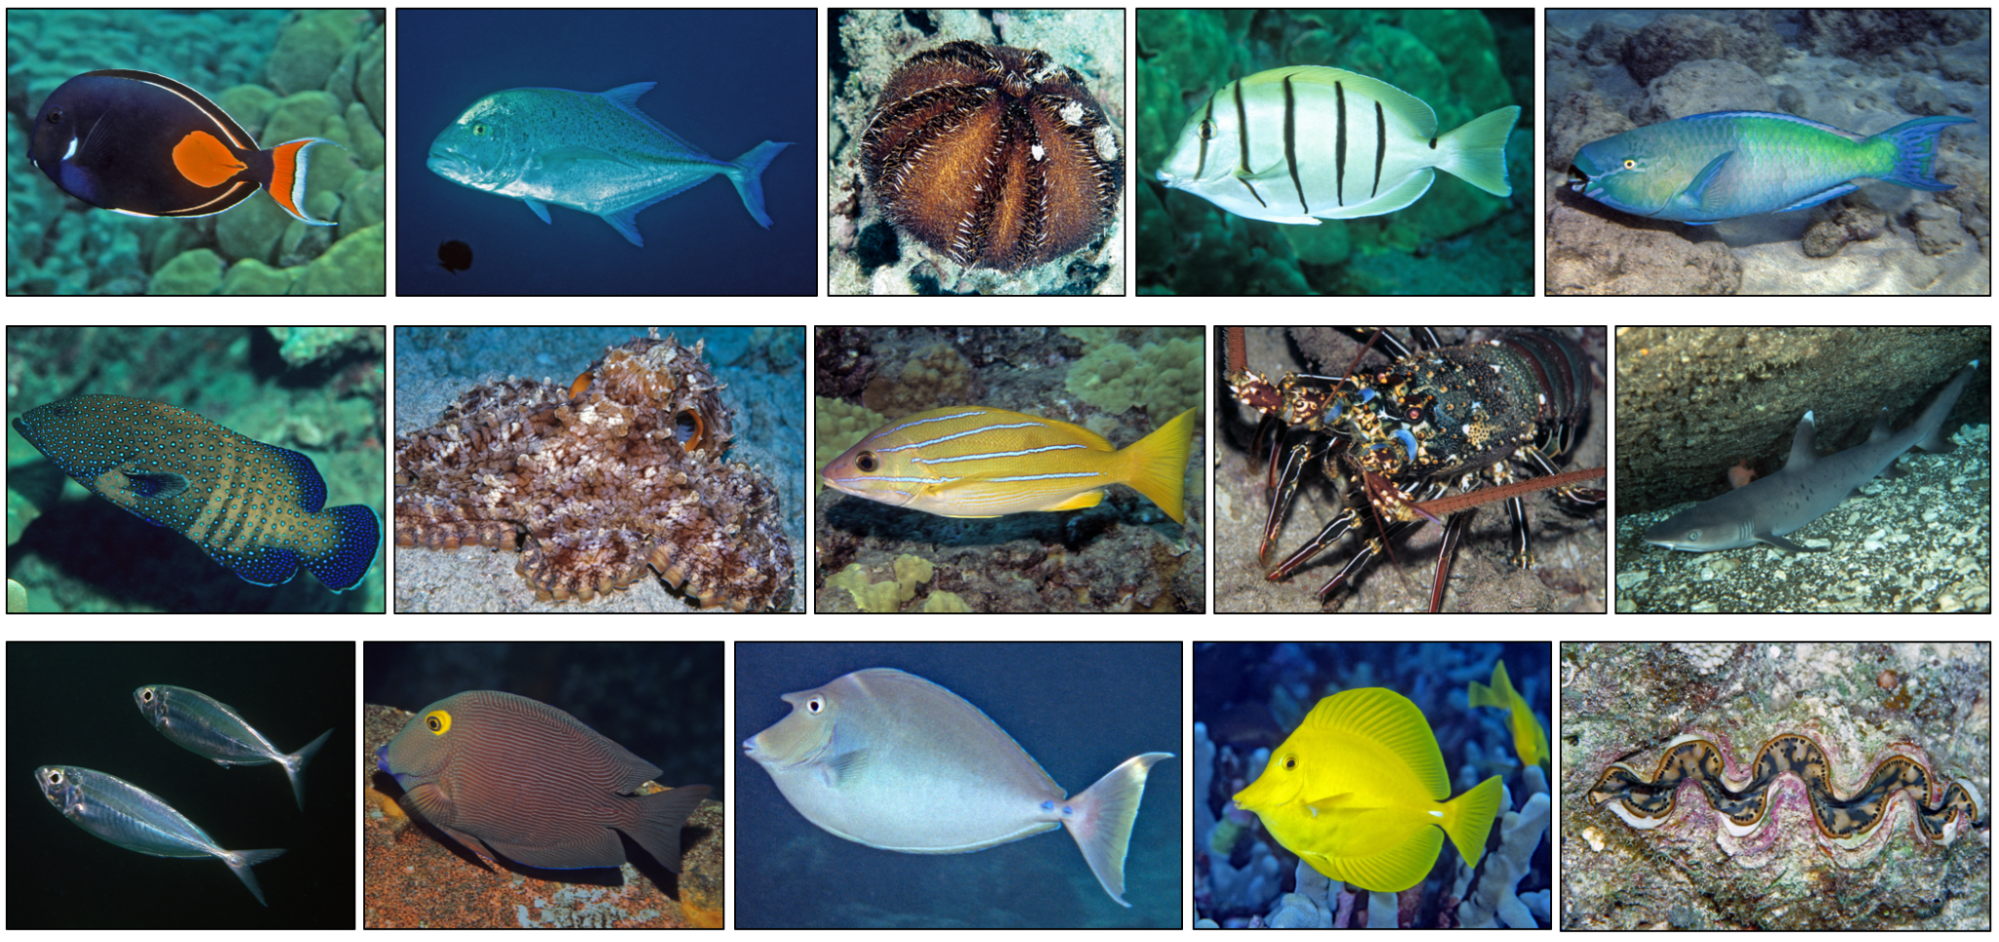 Image: Examining Marine Life Vulnerability to Climate Change